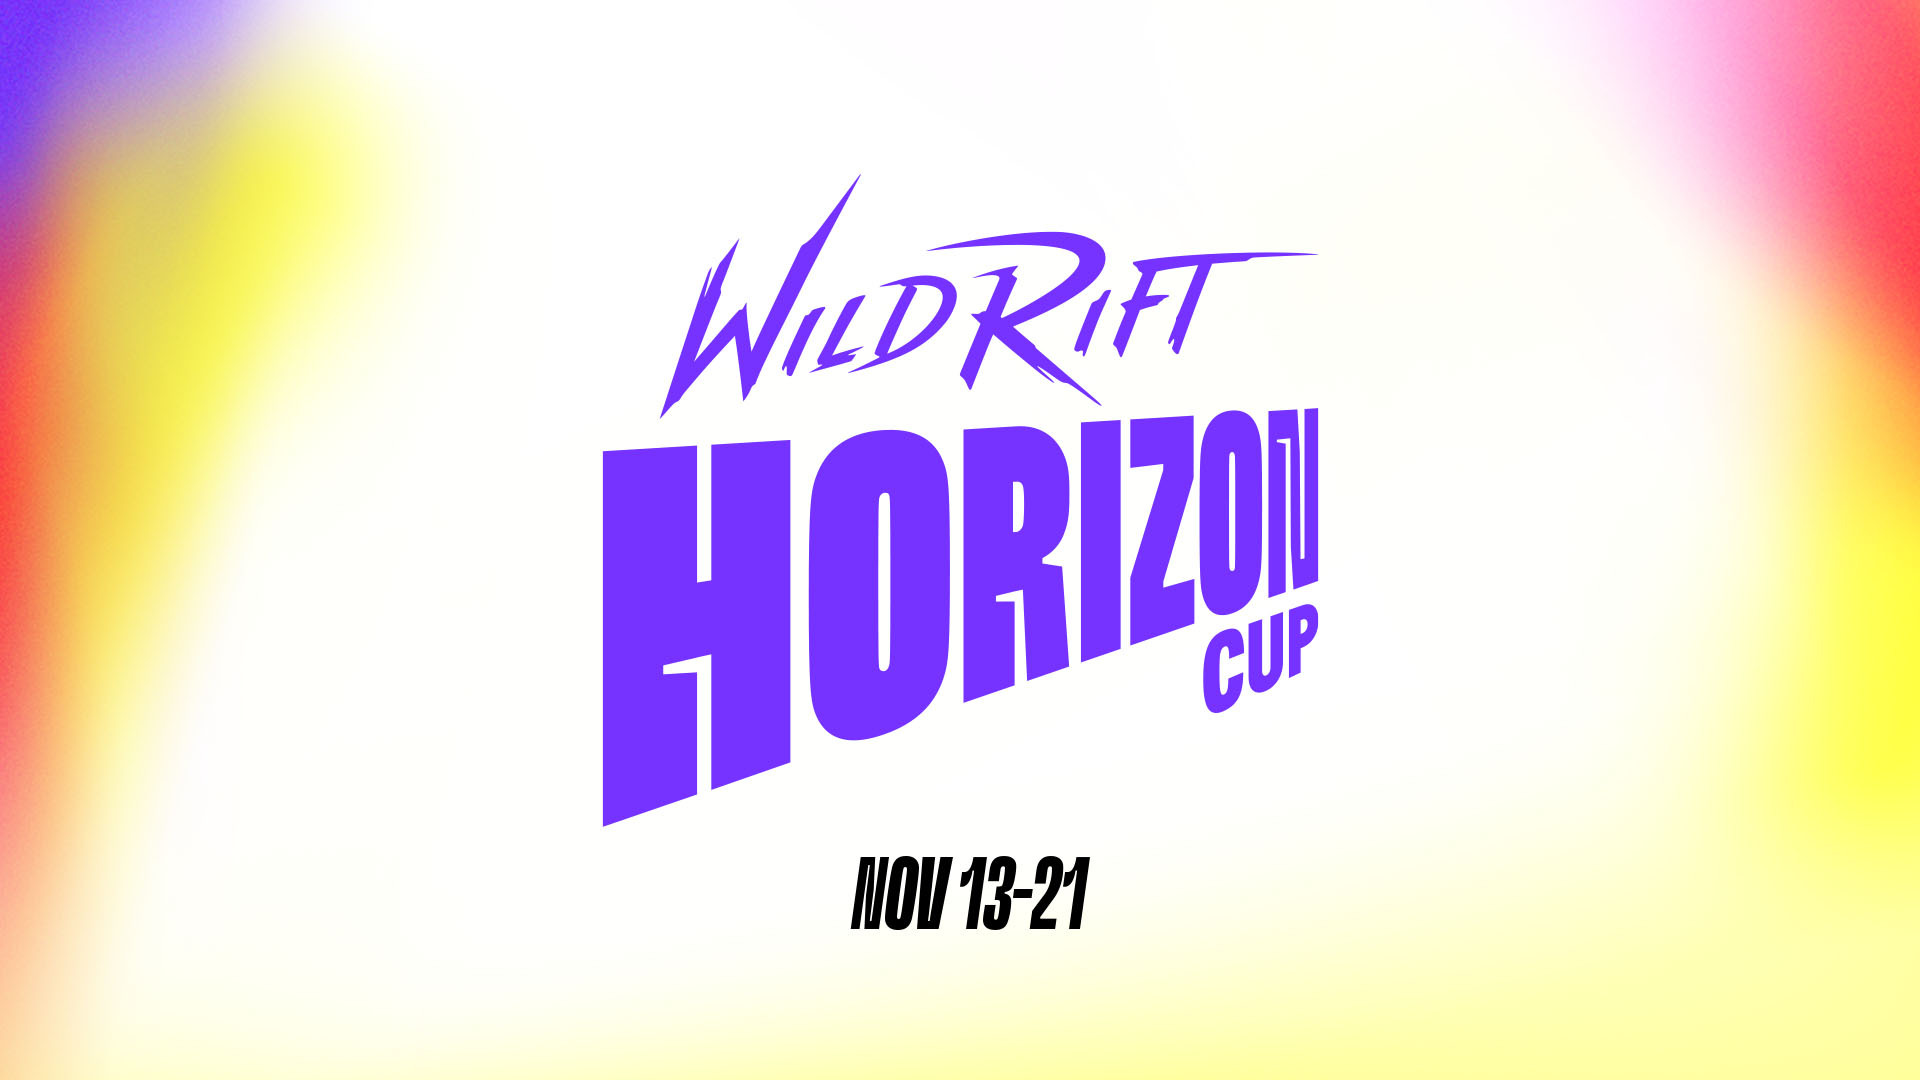 ตารางการแข่งขันของ Wild Rift Horizon Cup